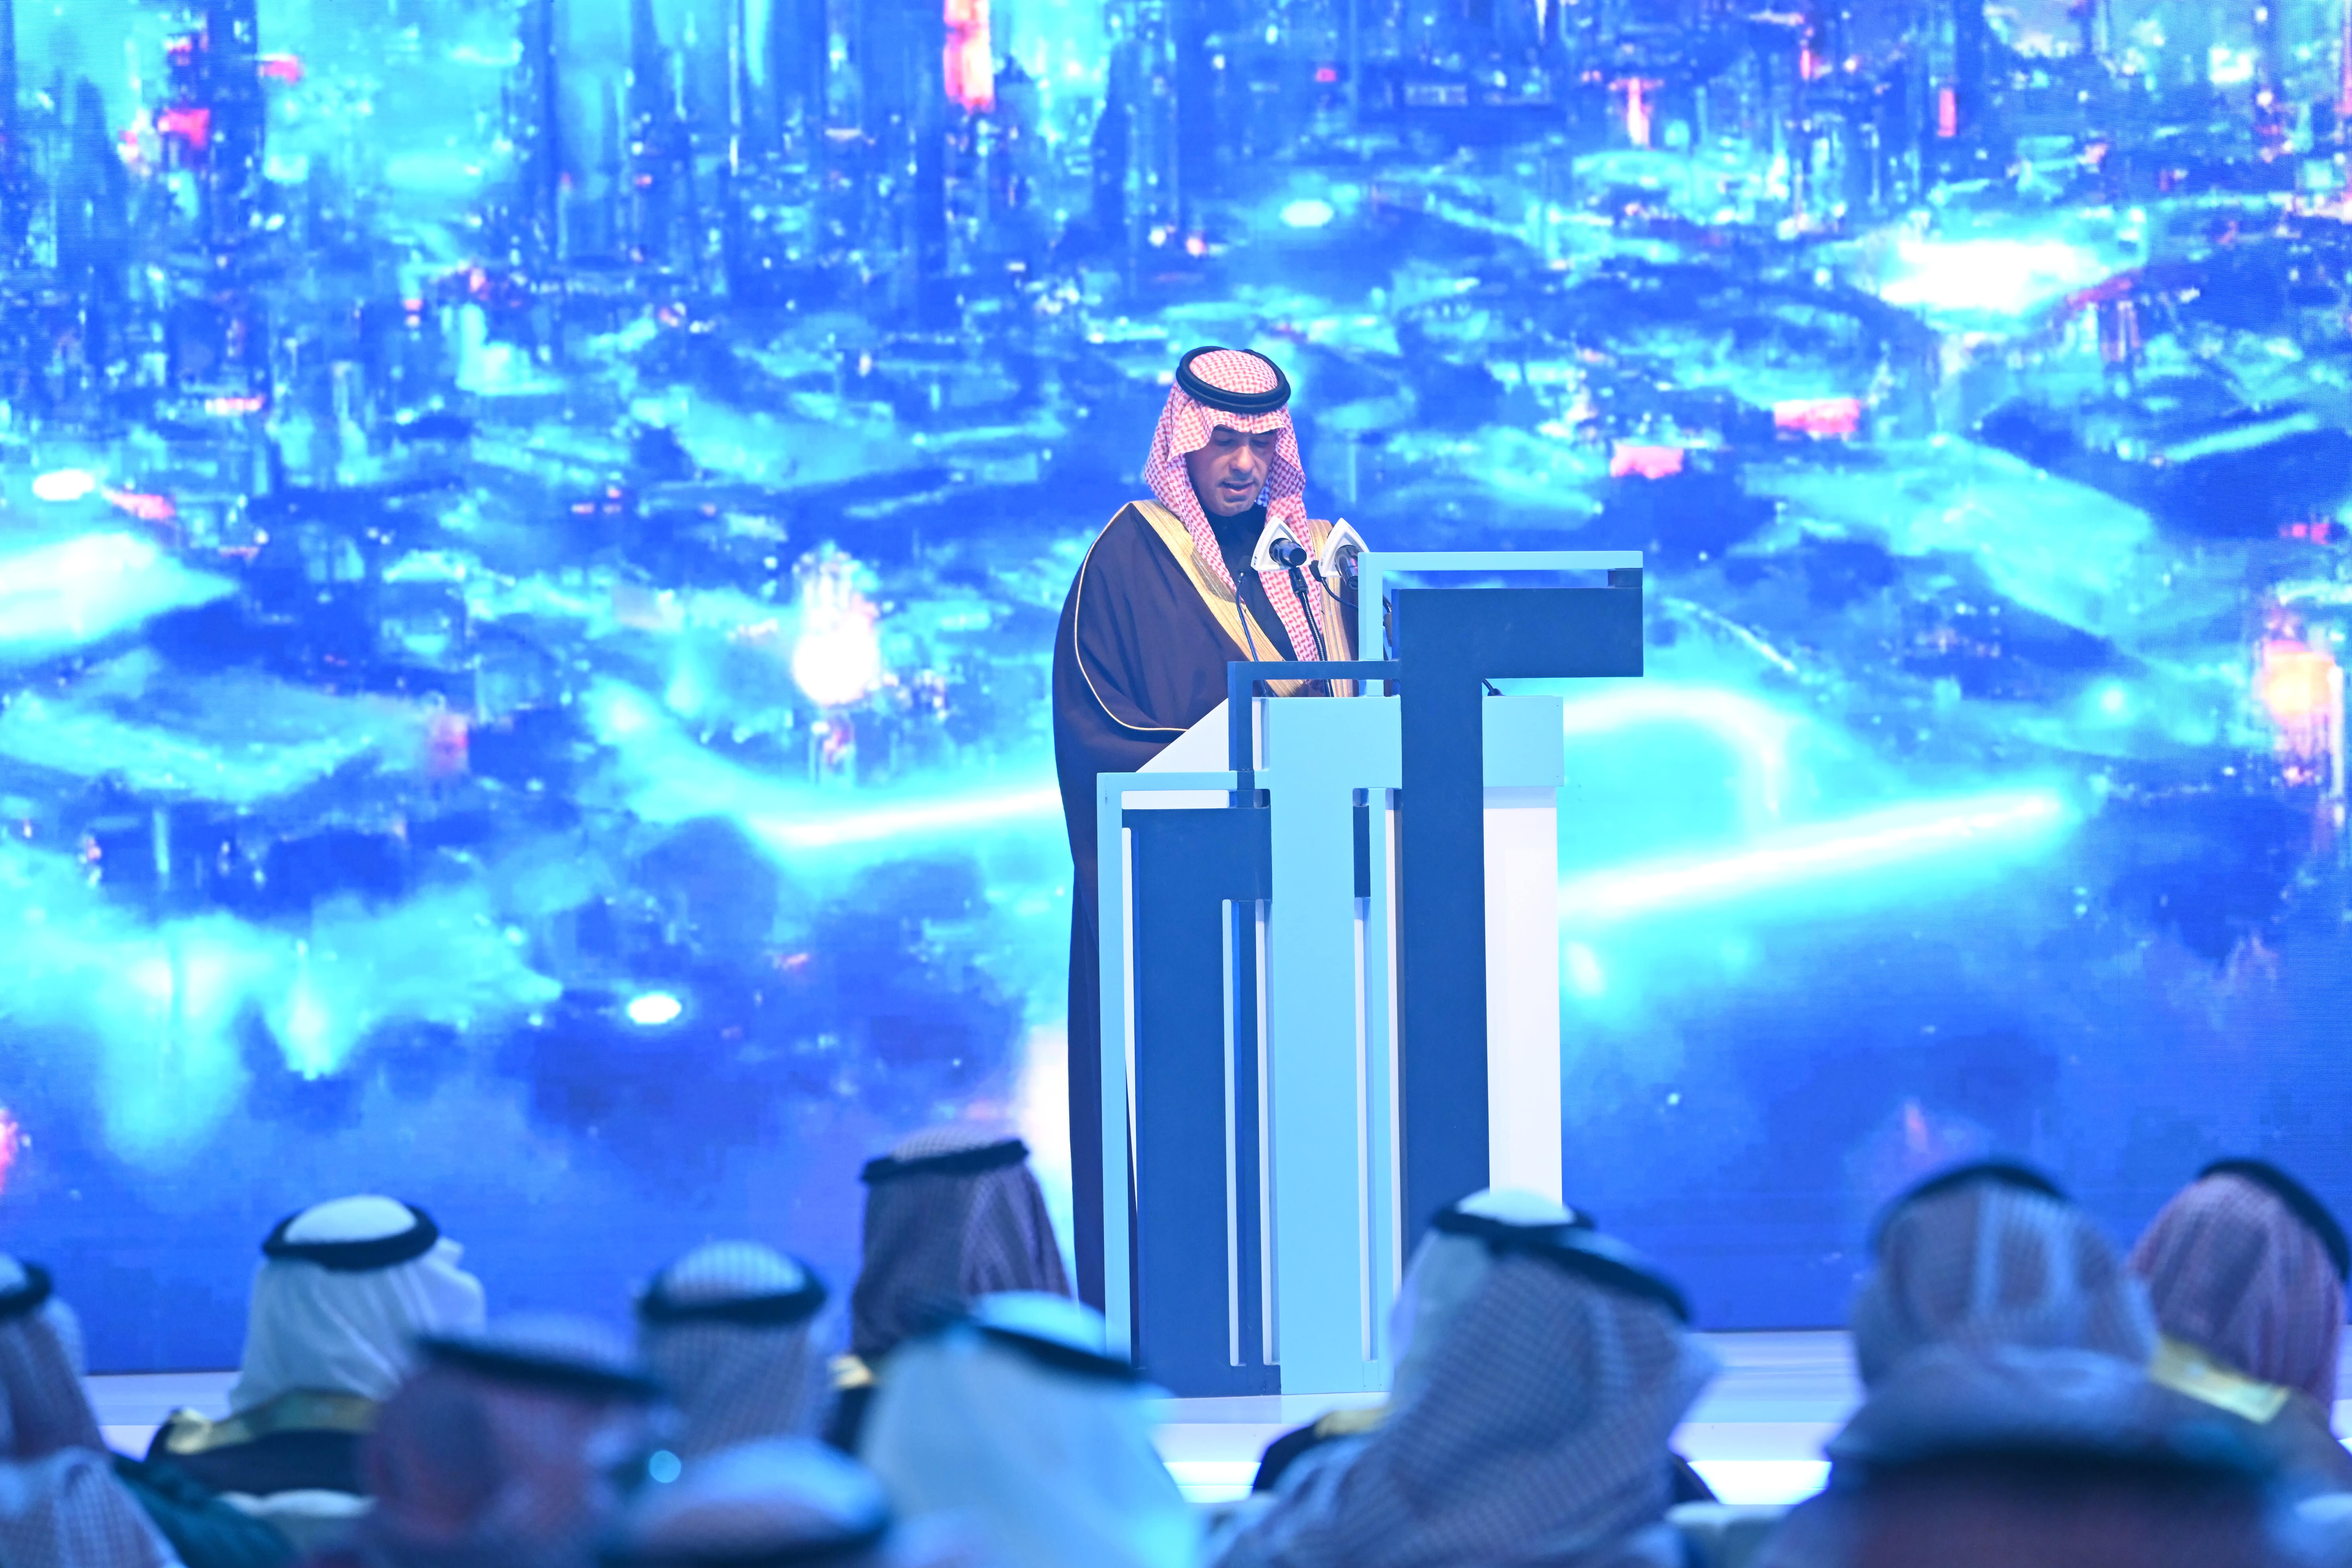 منتدى مستقبل العقار ينطلق في الرياض ويشهد توقيع اتفاقيات بأكثر من 10 مليارات ريال